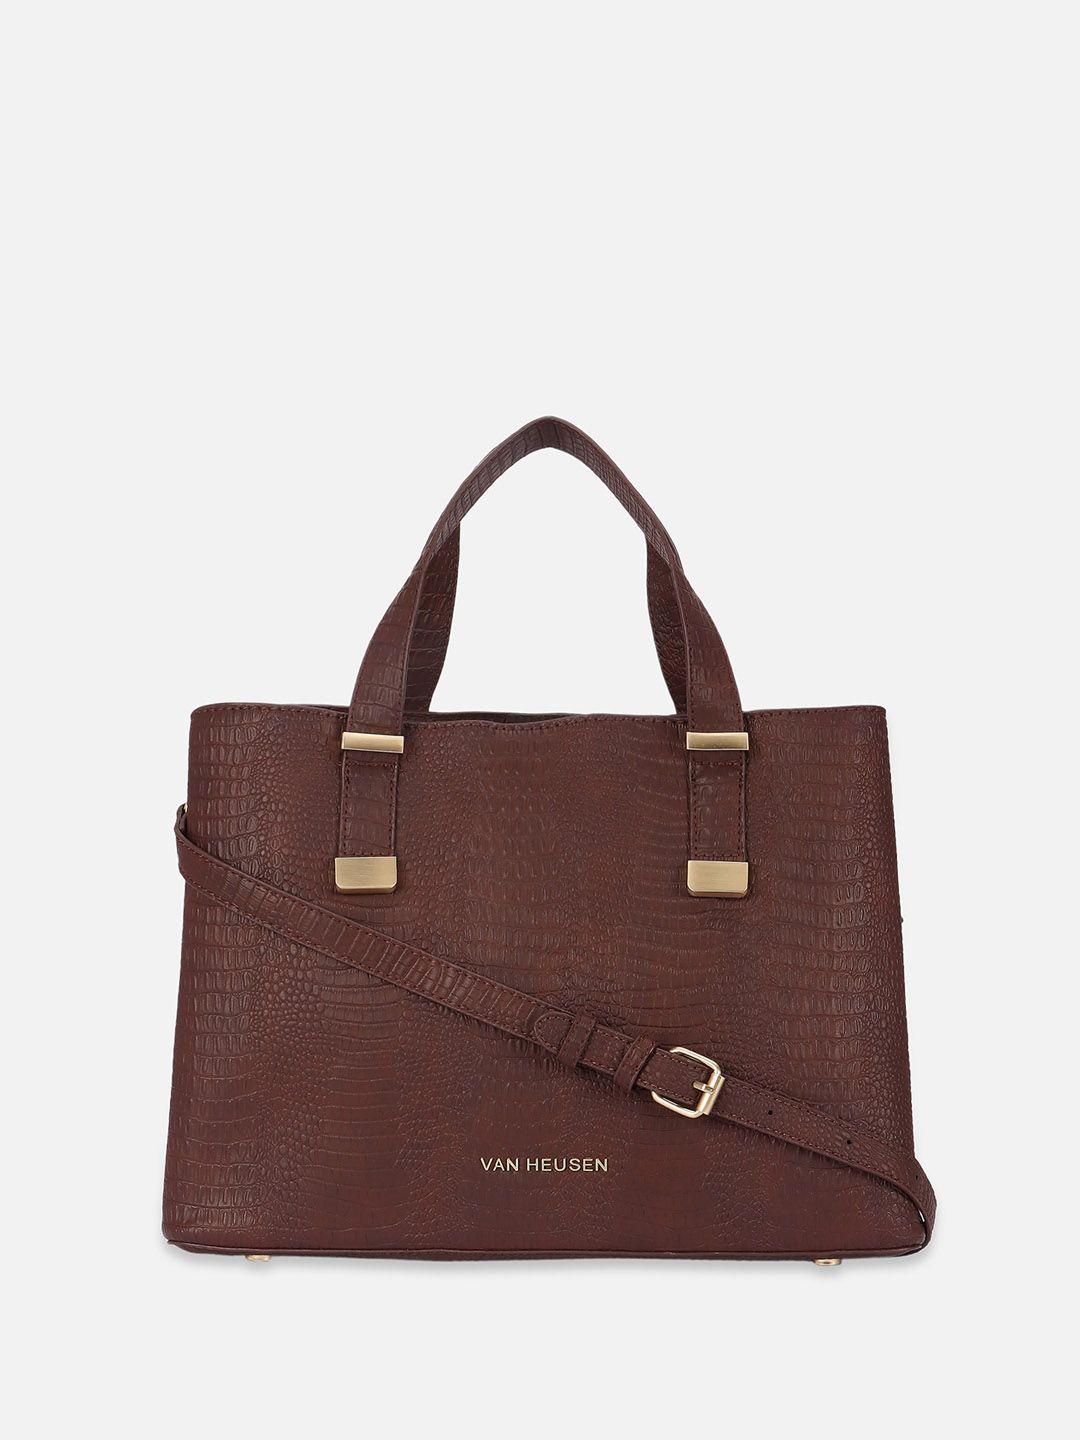 van heusen woman textured structured handheld bag